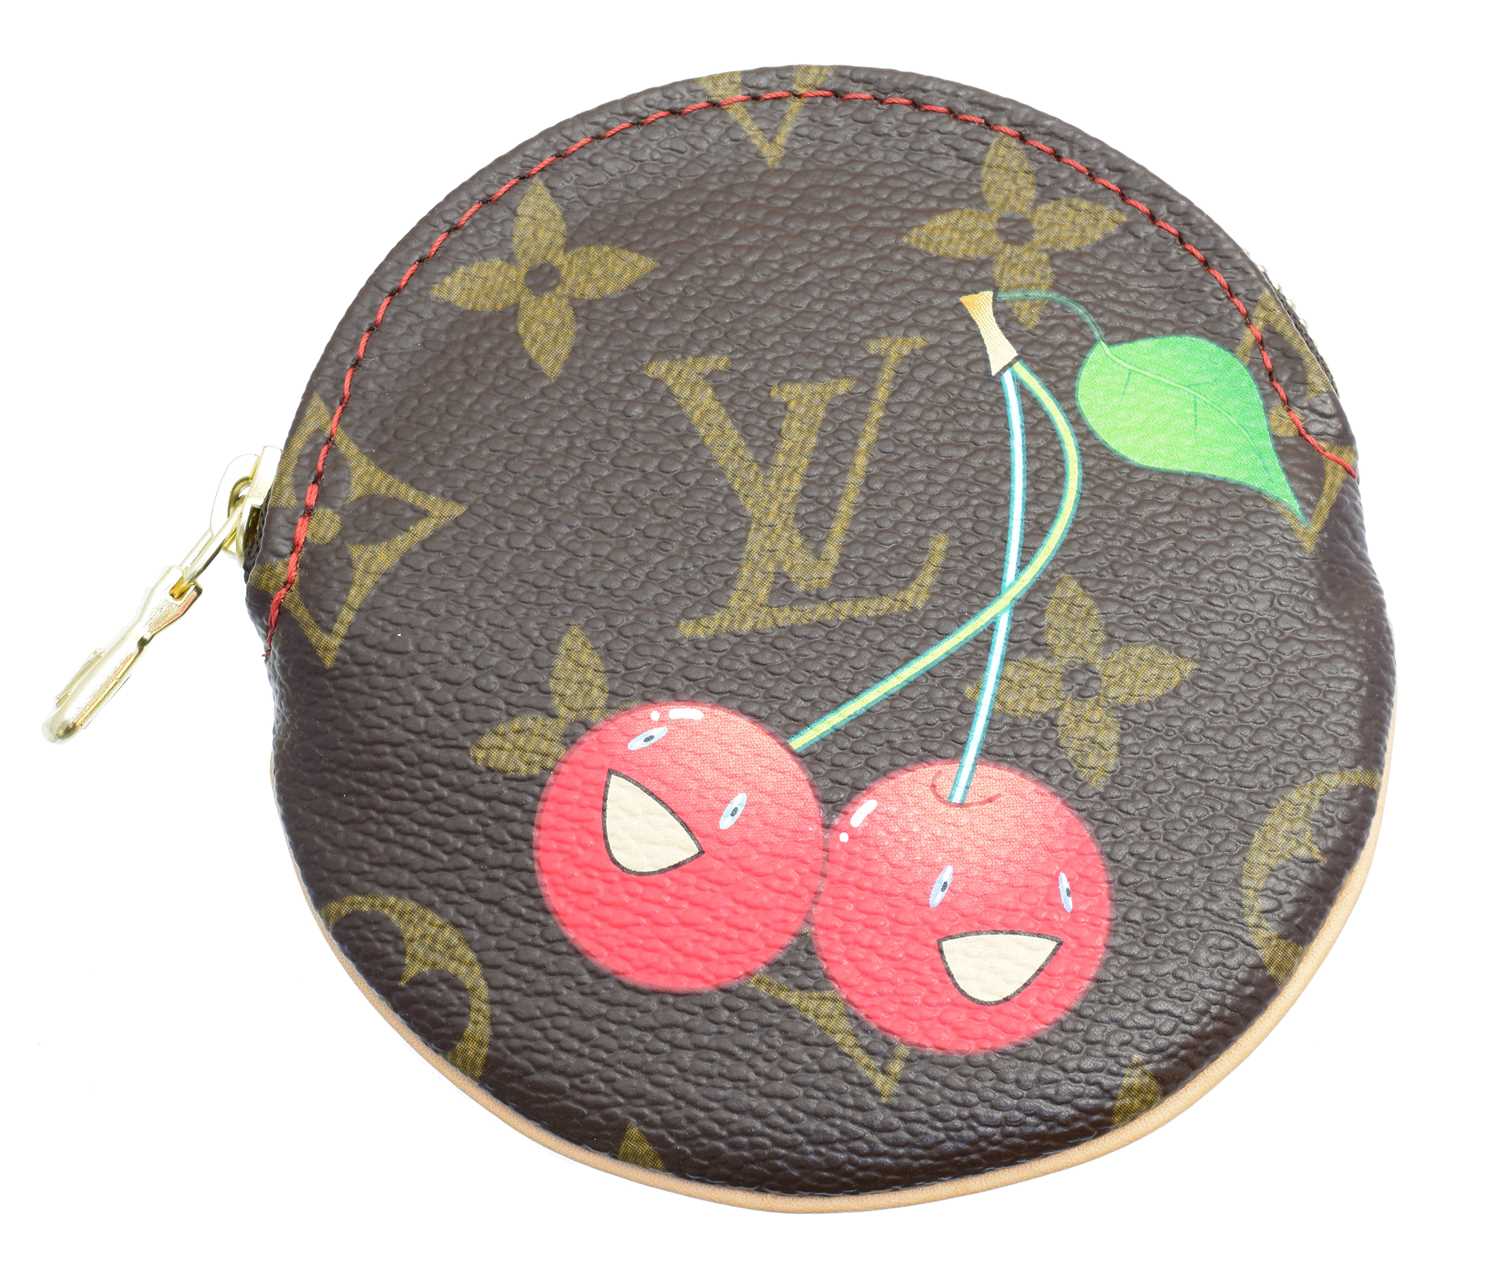 Lot 3 - A Louis Vuitton Limited Edition Monogram Cerises coin purse